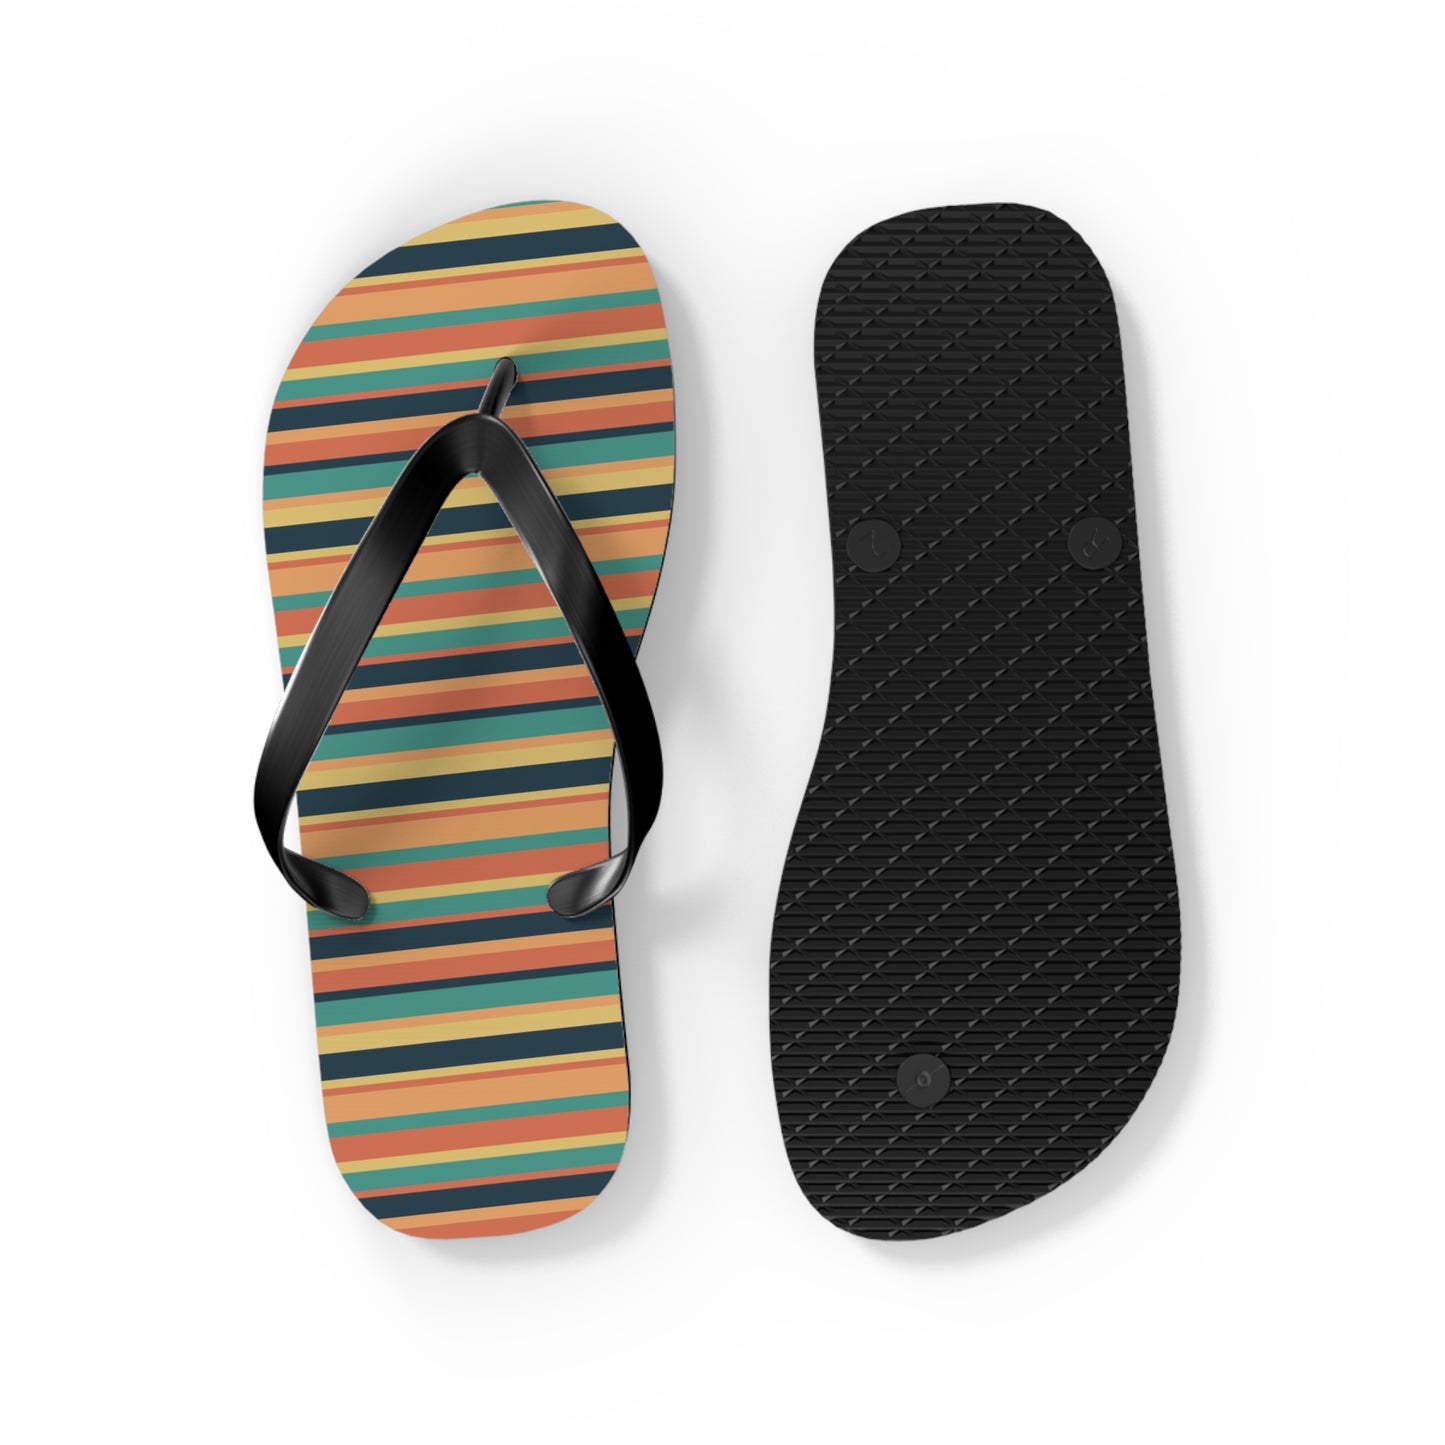 Sunbaked Stripes on Flip Flops